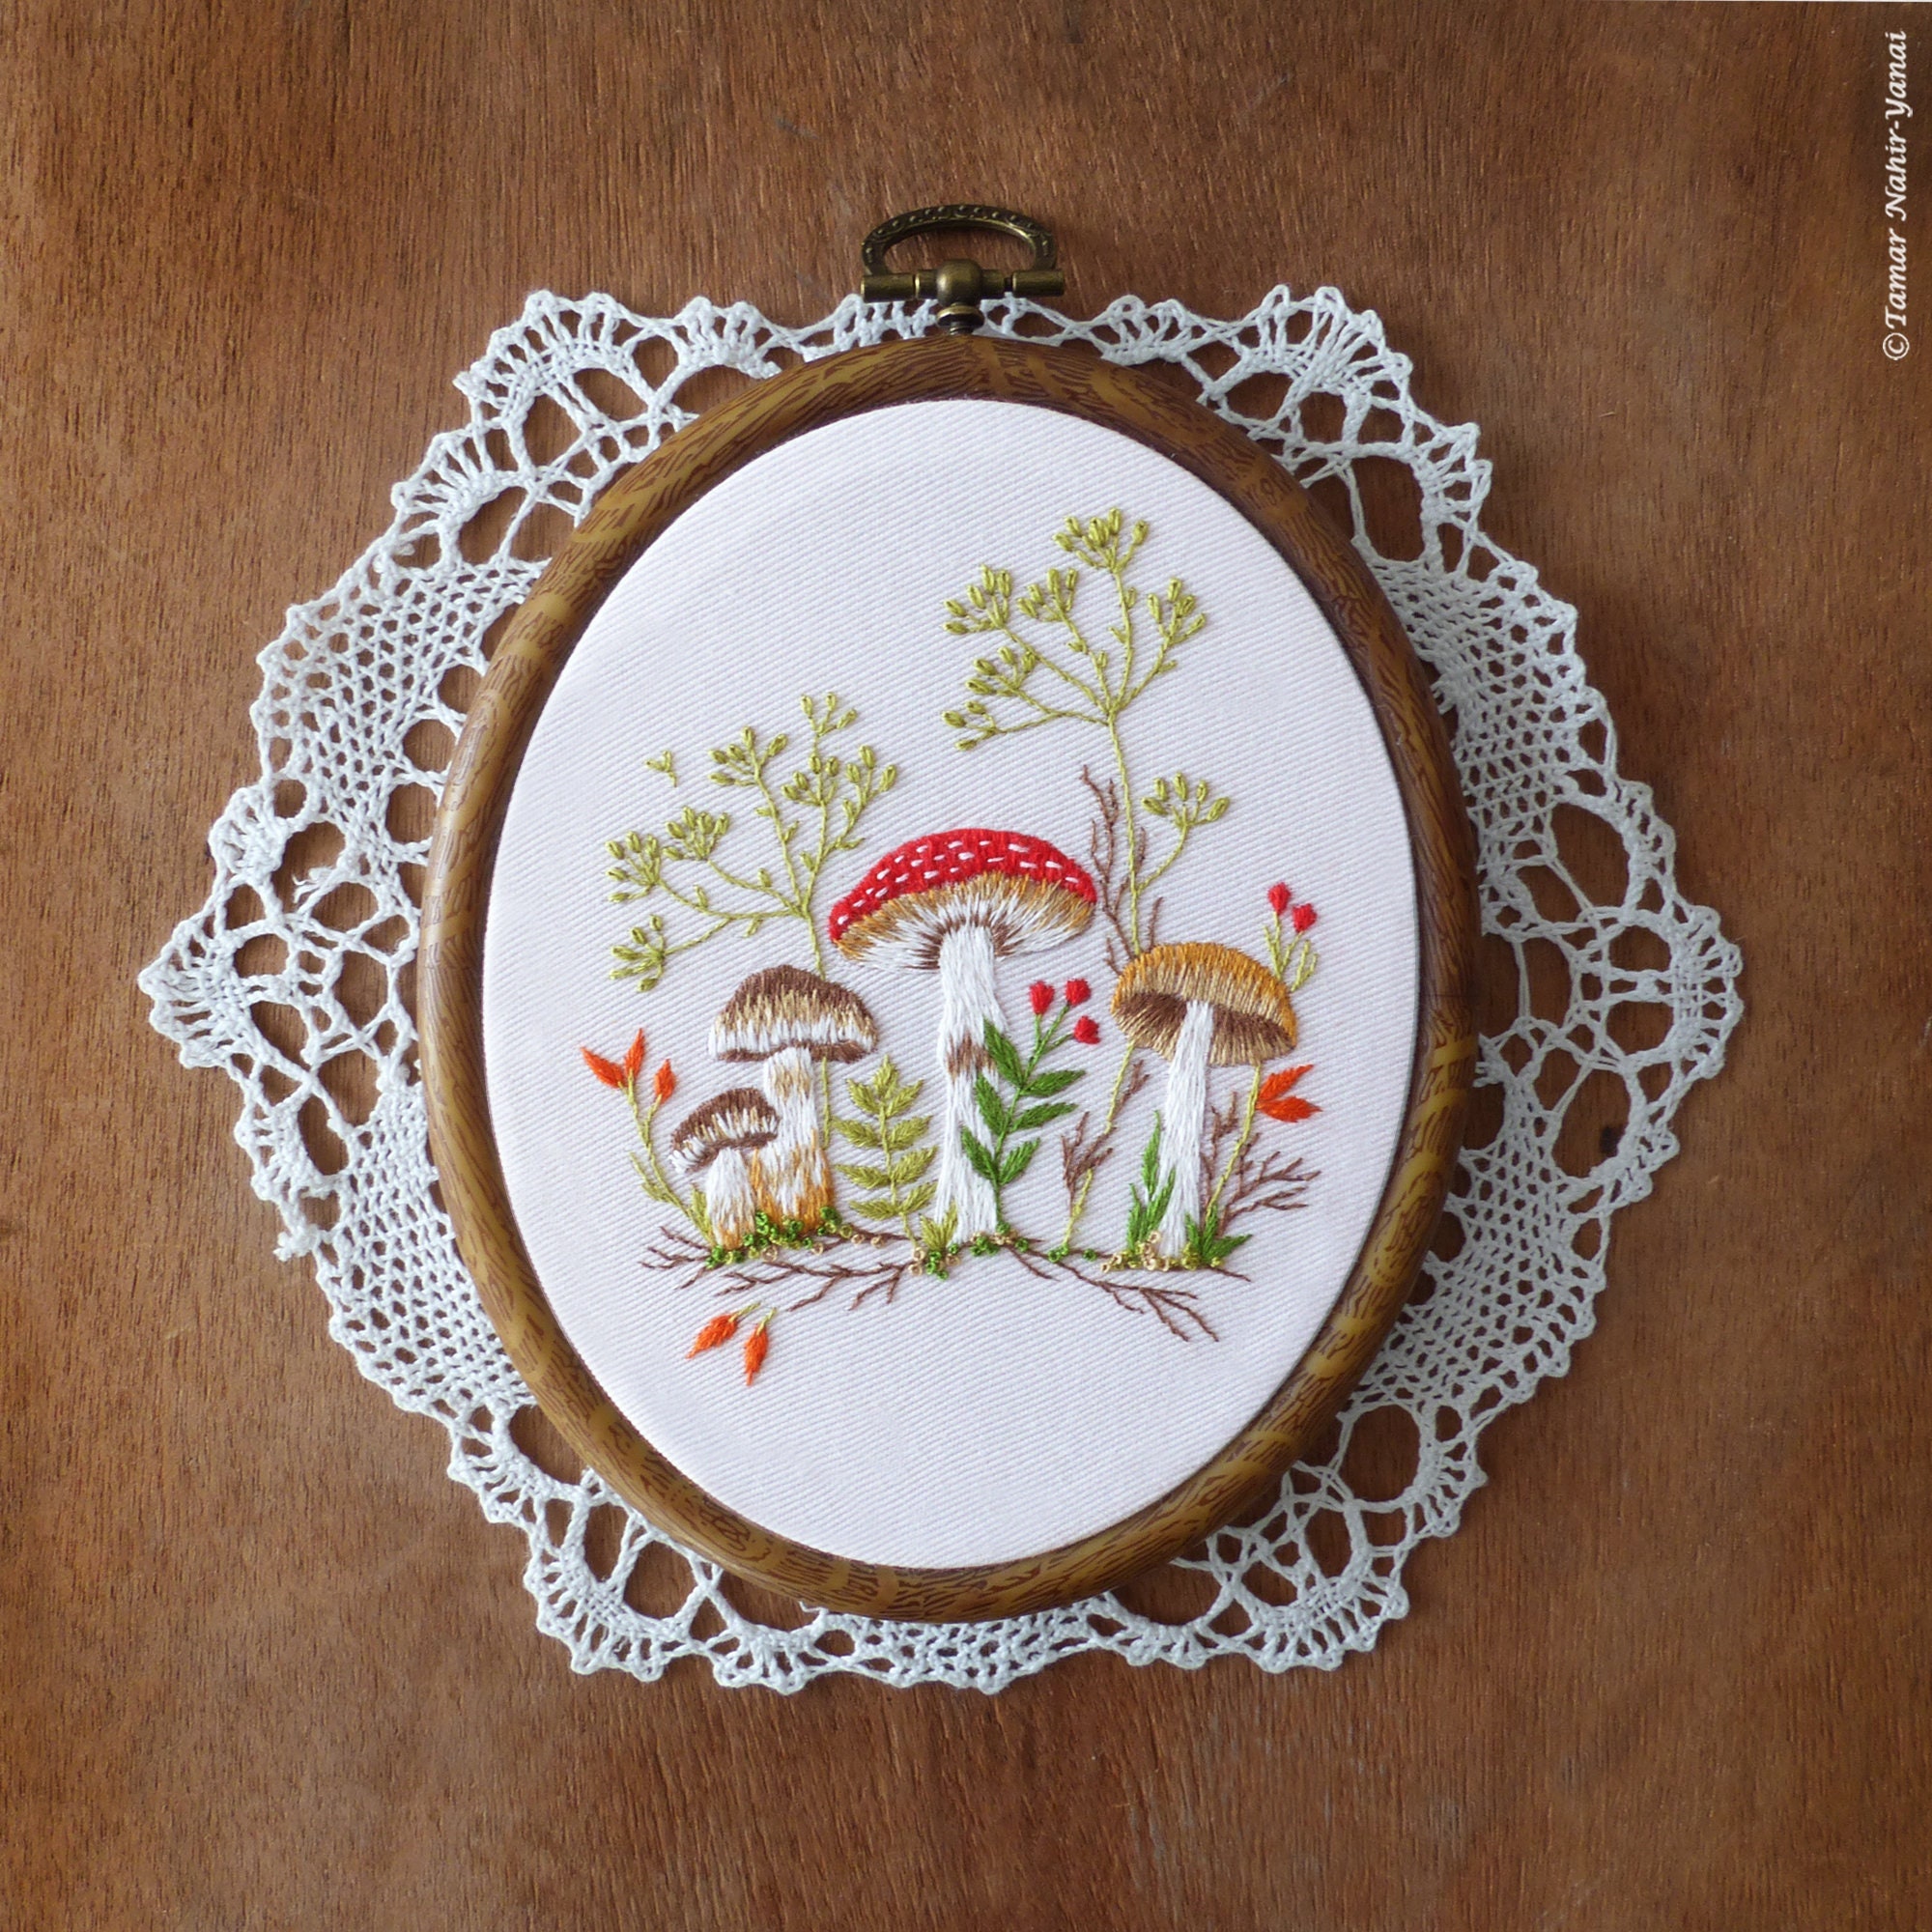 Embroidery Kit Mushroom GG181 Kikkerland#1 - 612615106727